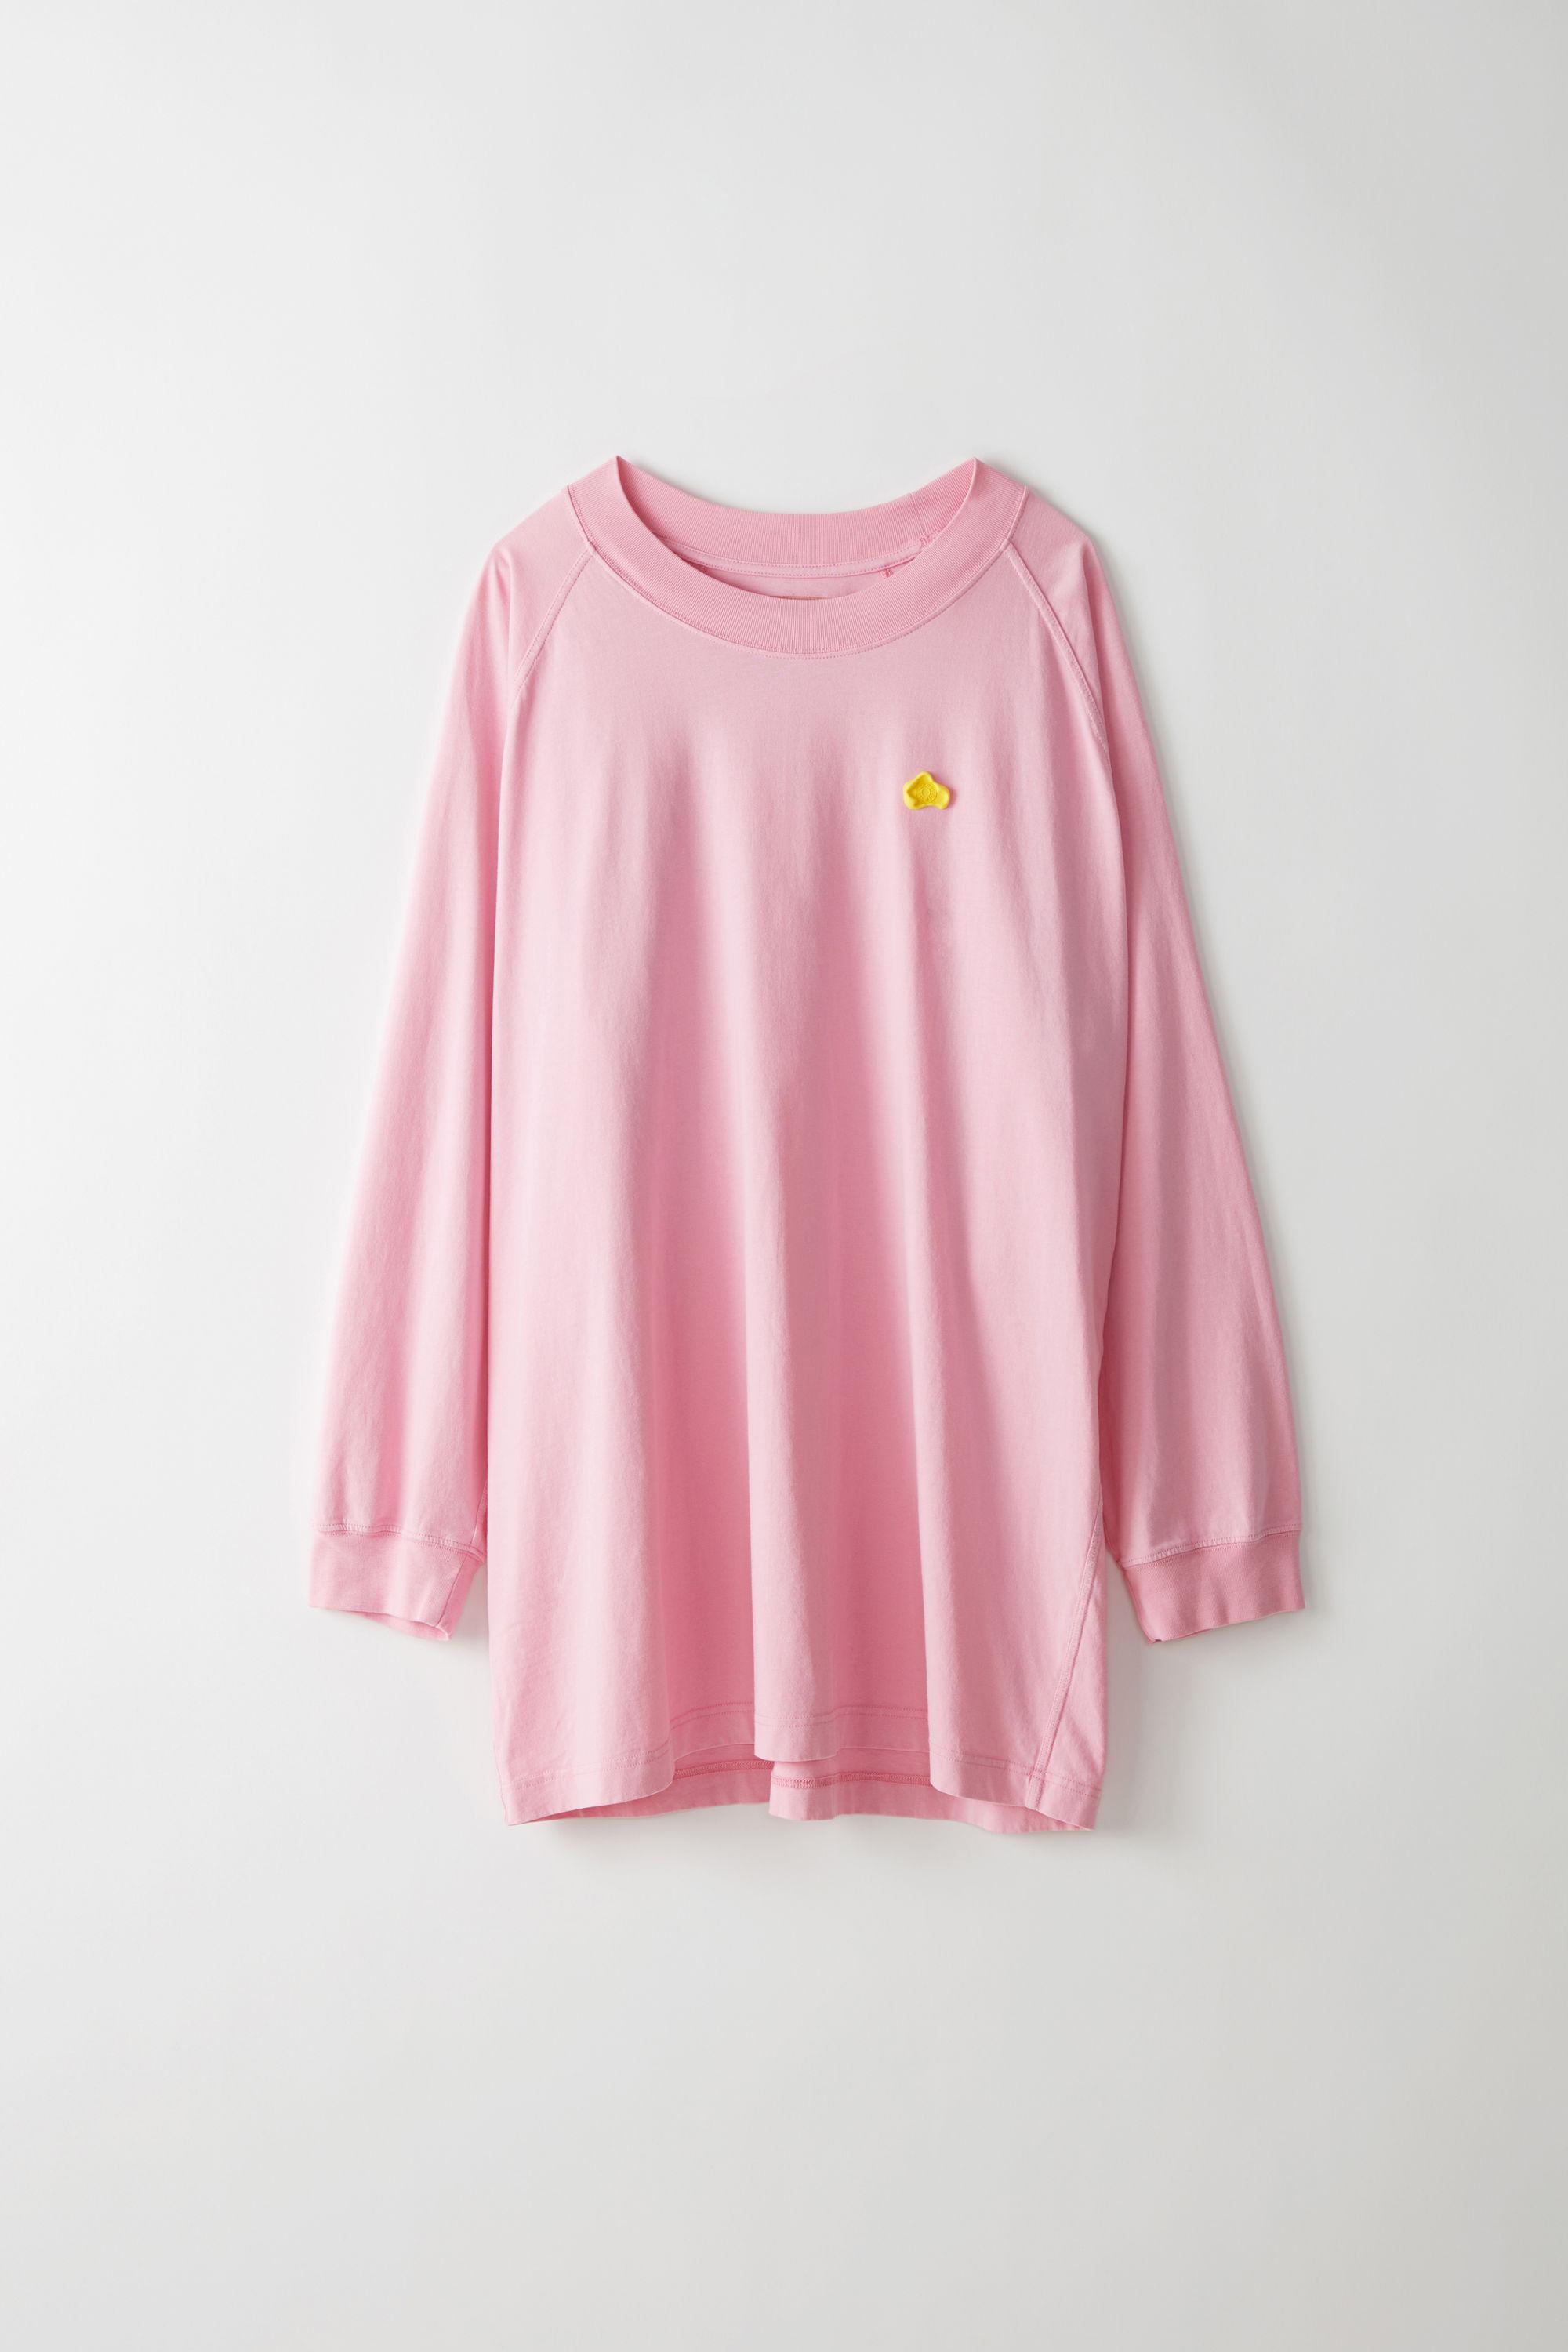 pink raglan shirt